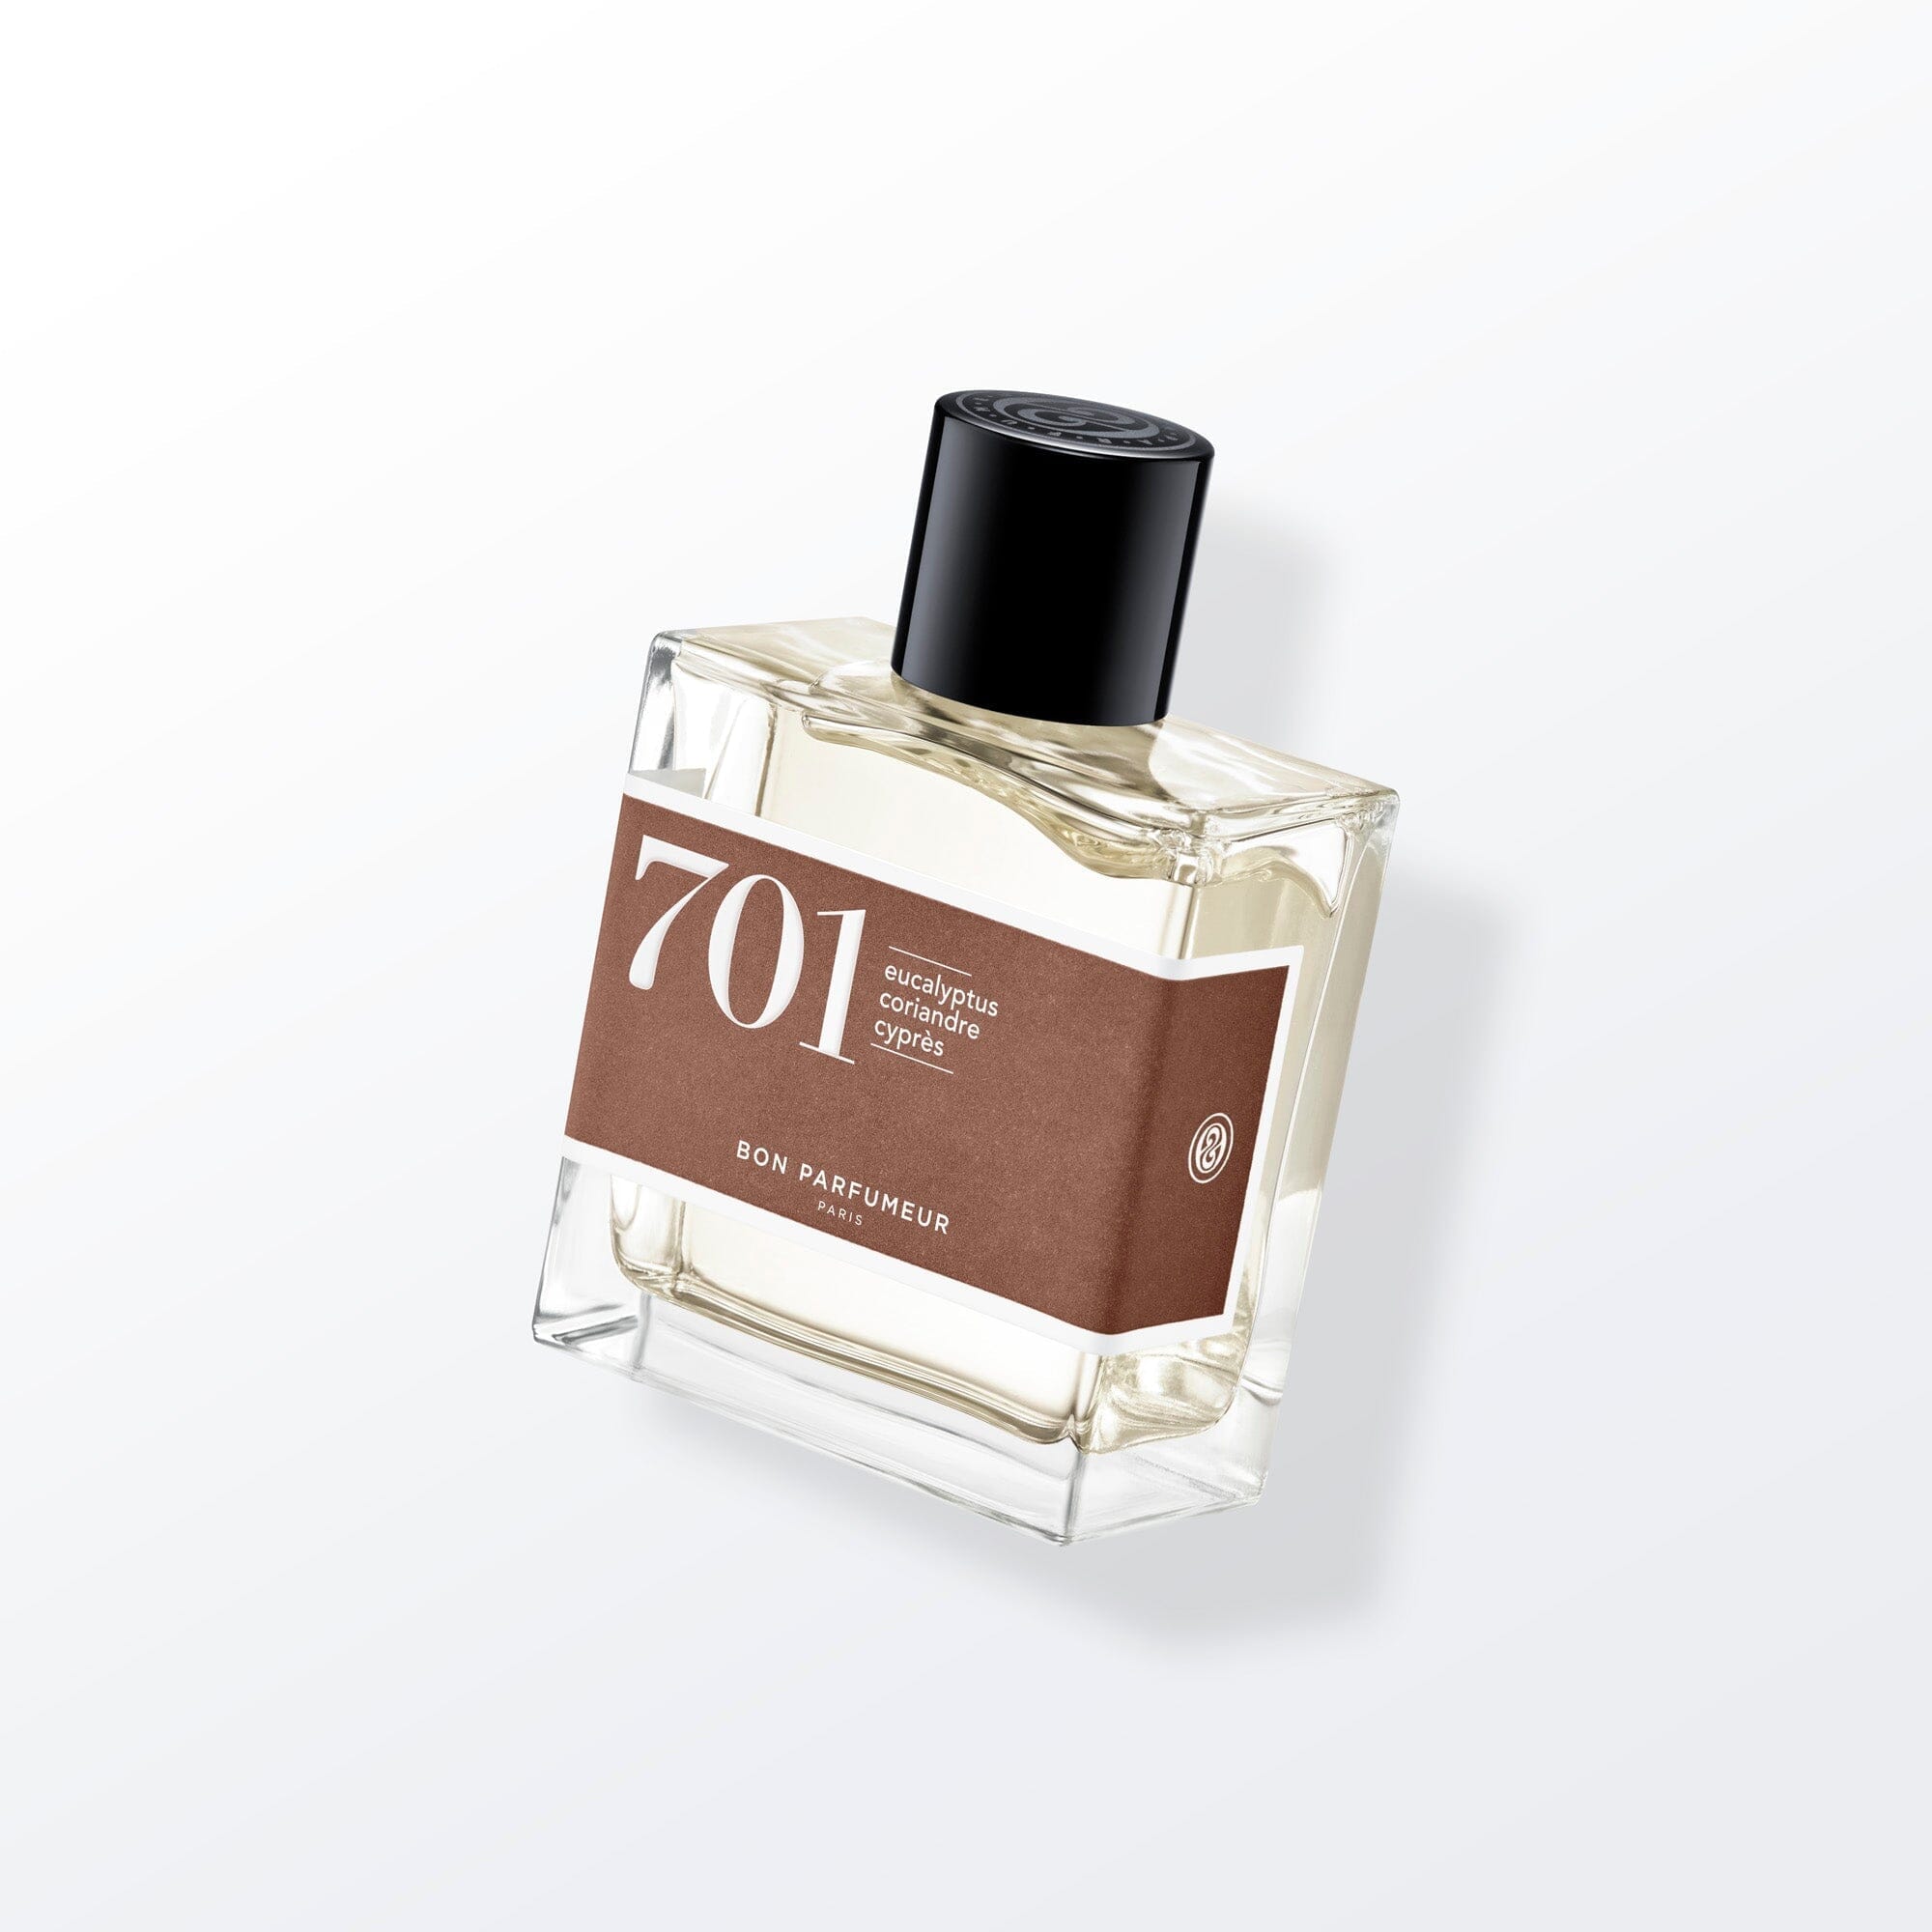 Eau de parfum 701 à l'eucalyptus, à la coriandre et au cyprès Eau de parfum Bon Parfumeur France 100ml+15ml (15ml -50%) 